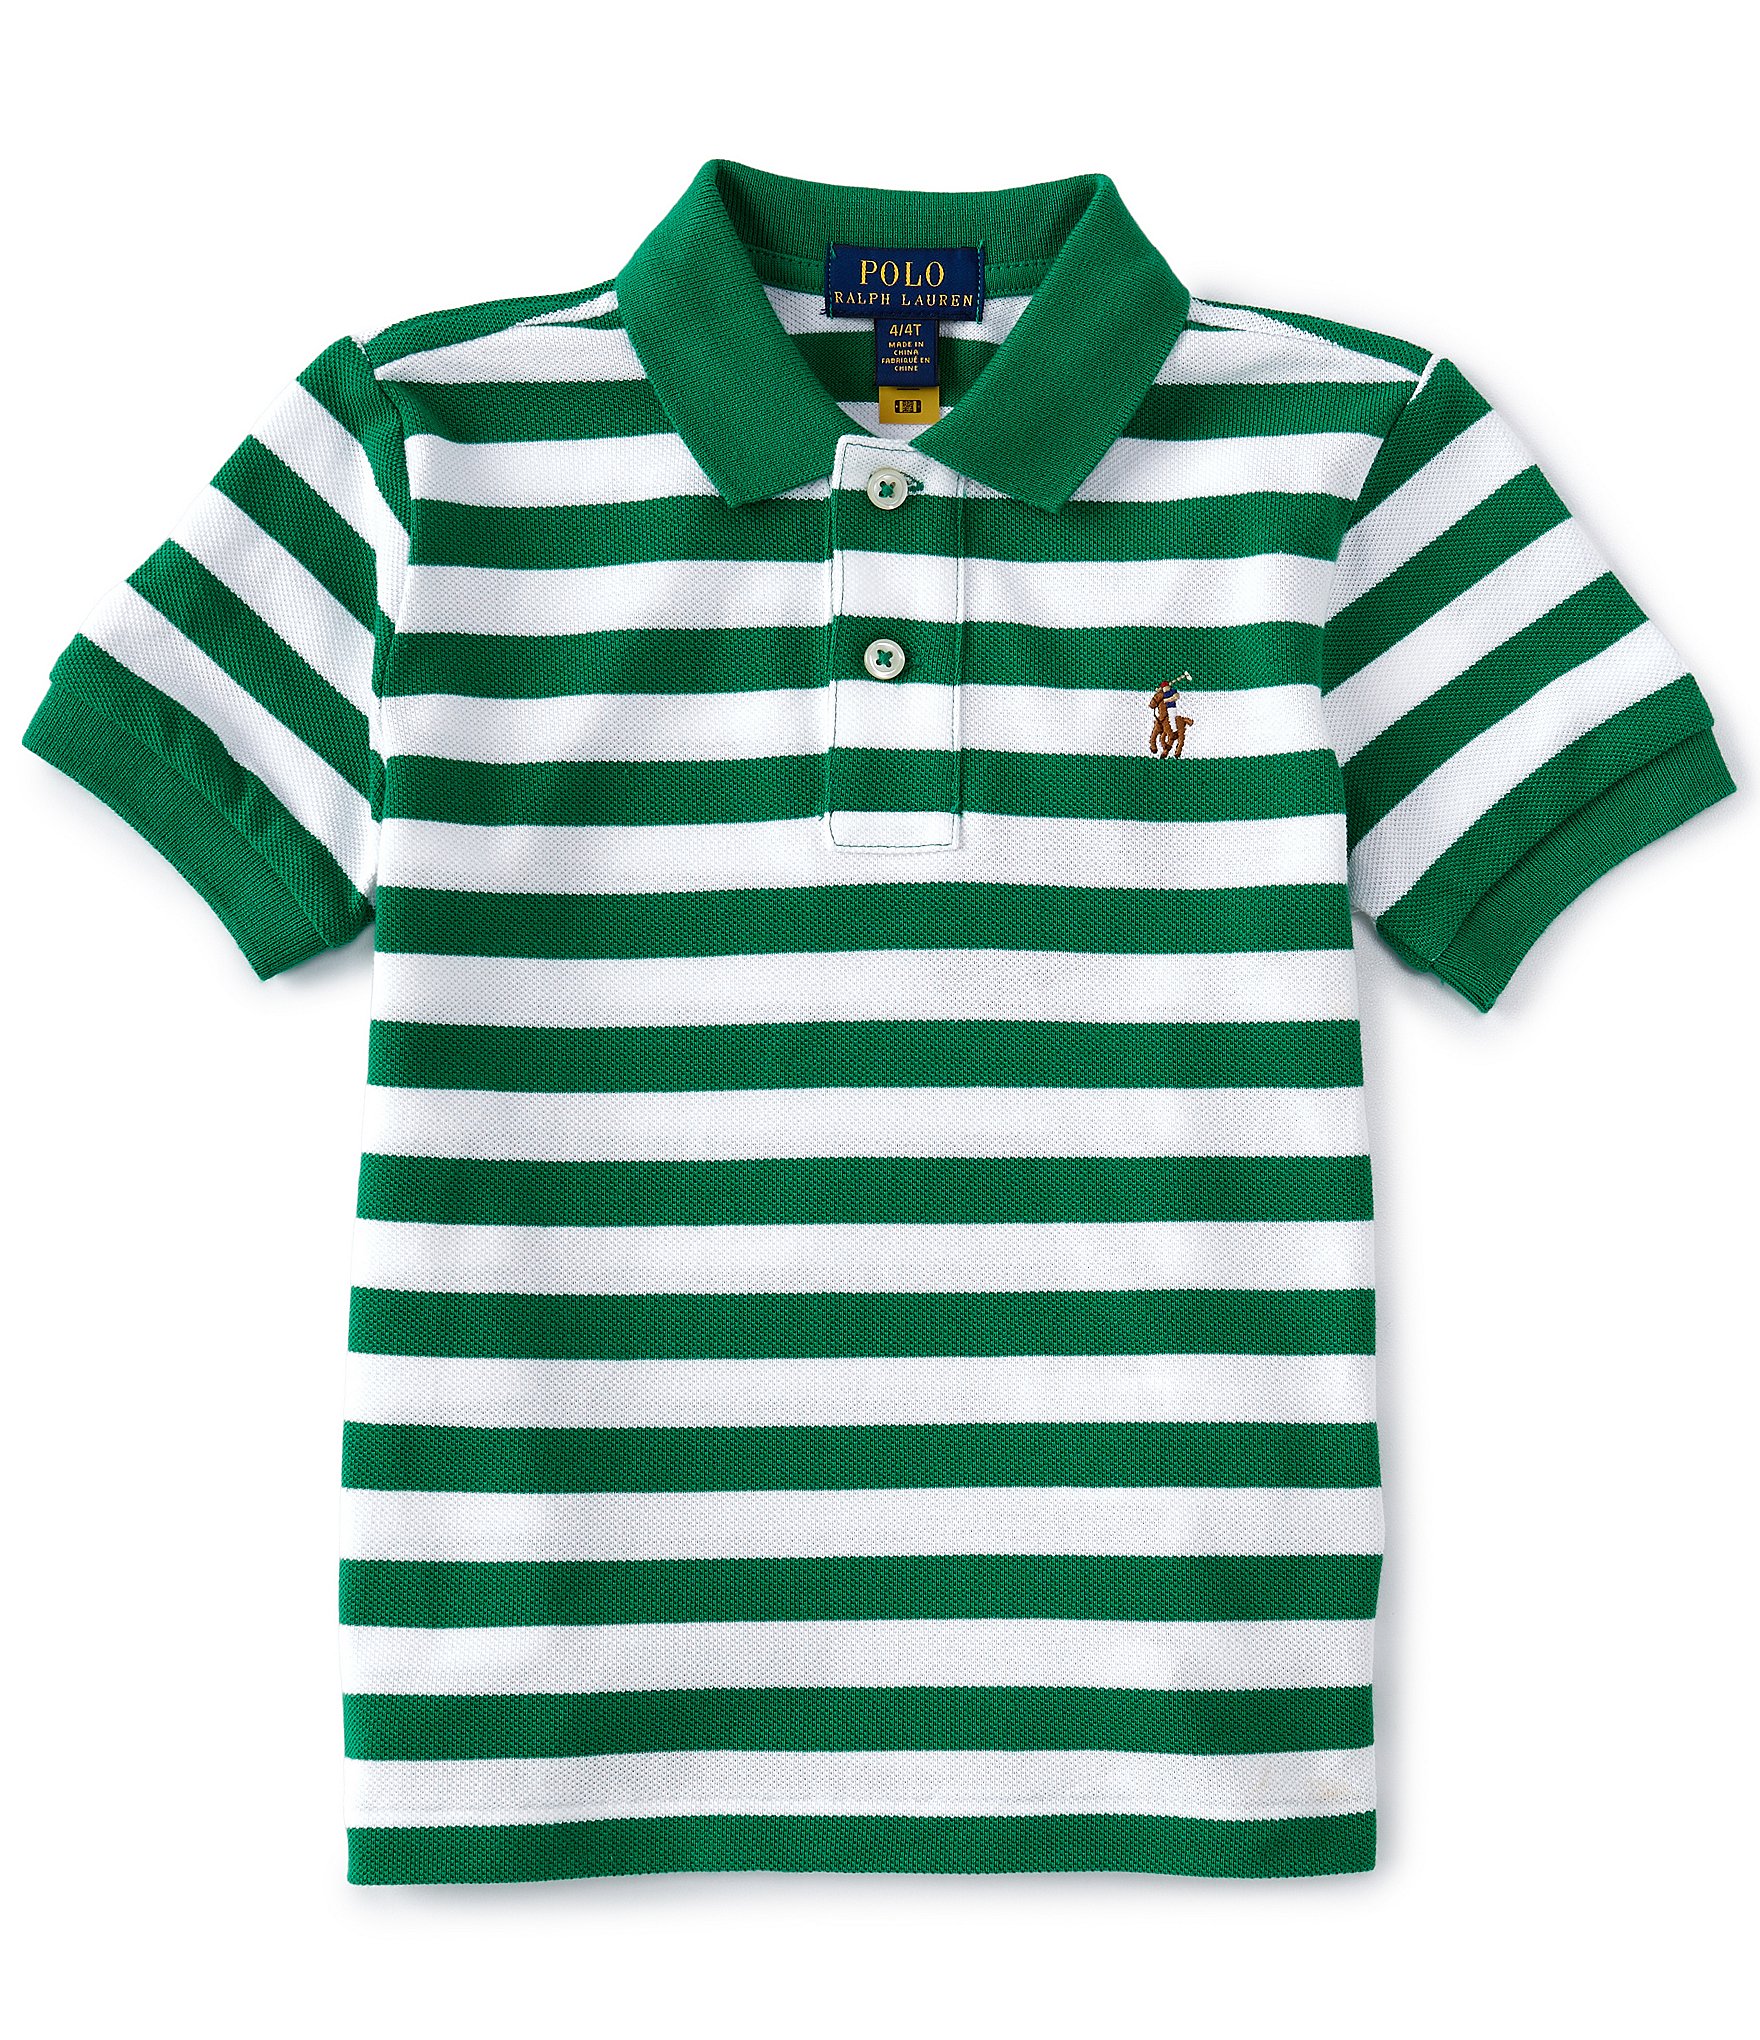 Polo Ralph Lauren Stripe Green Shirt. Boys polo